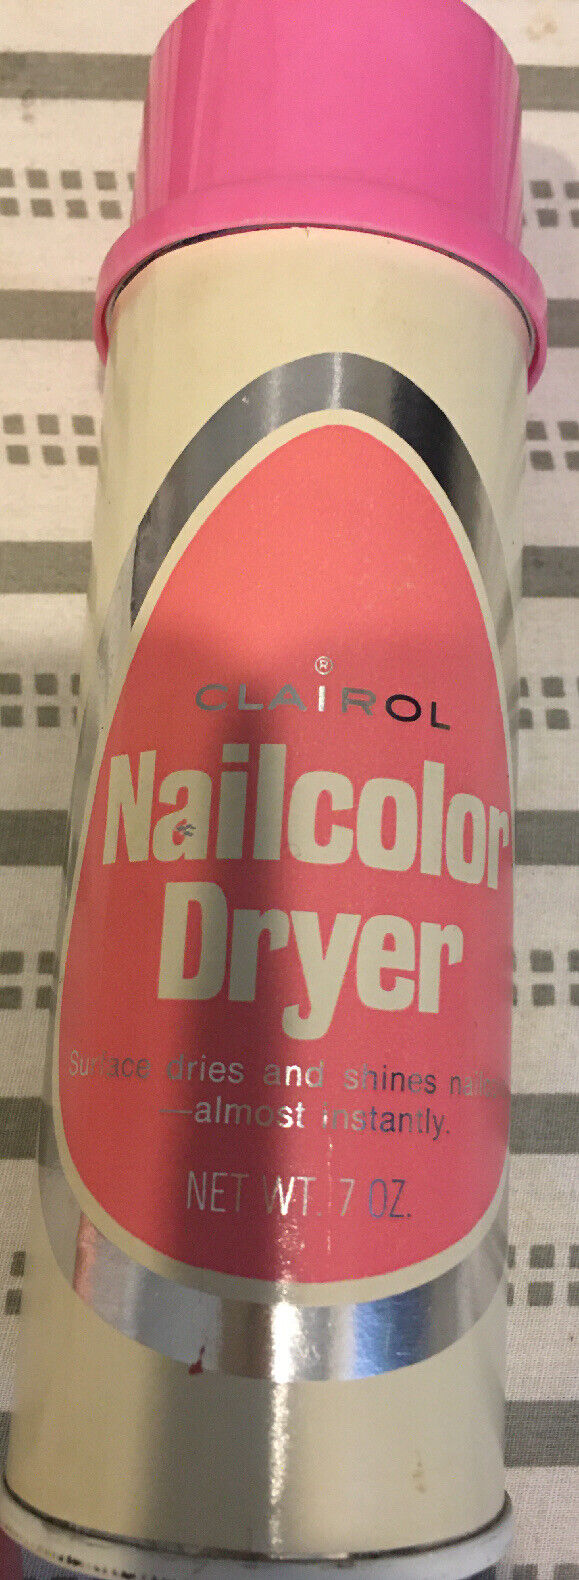 Clairol Vintage Nailcolor Dryer Estate Sale Find Works!